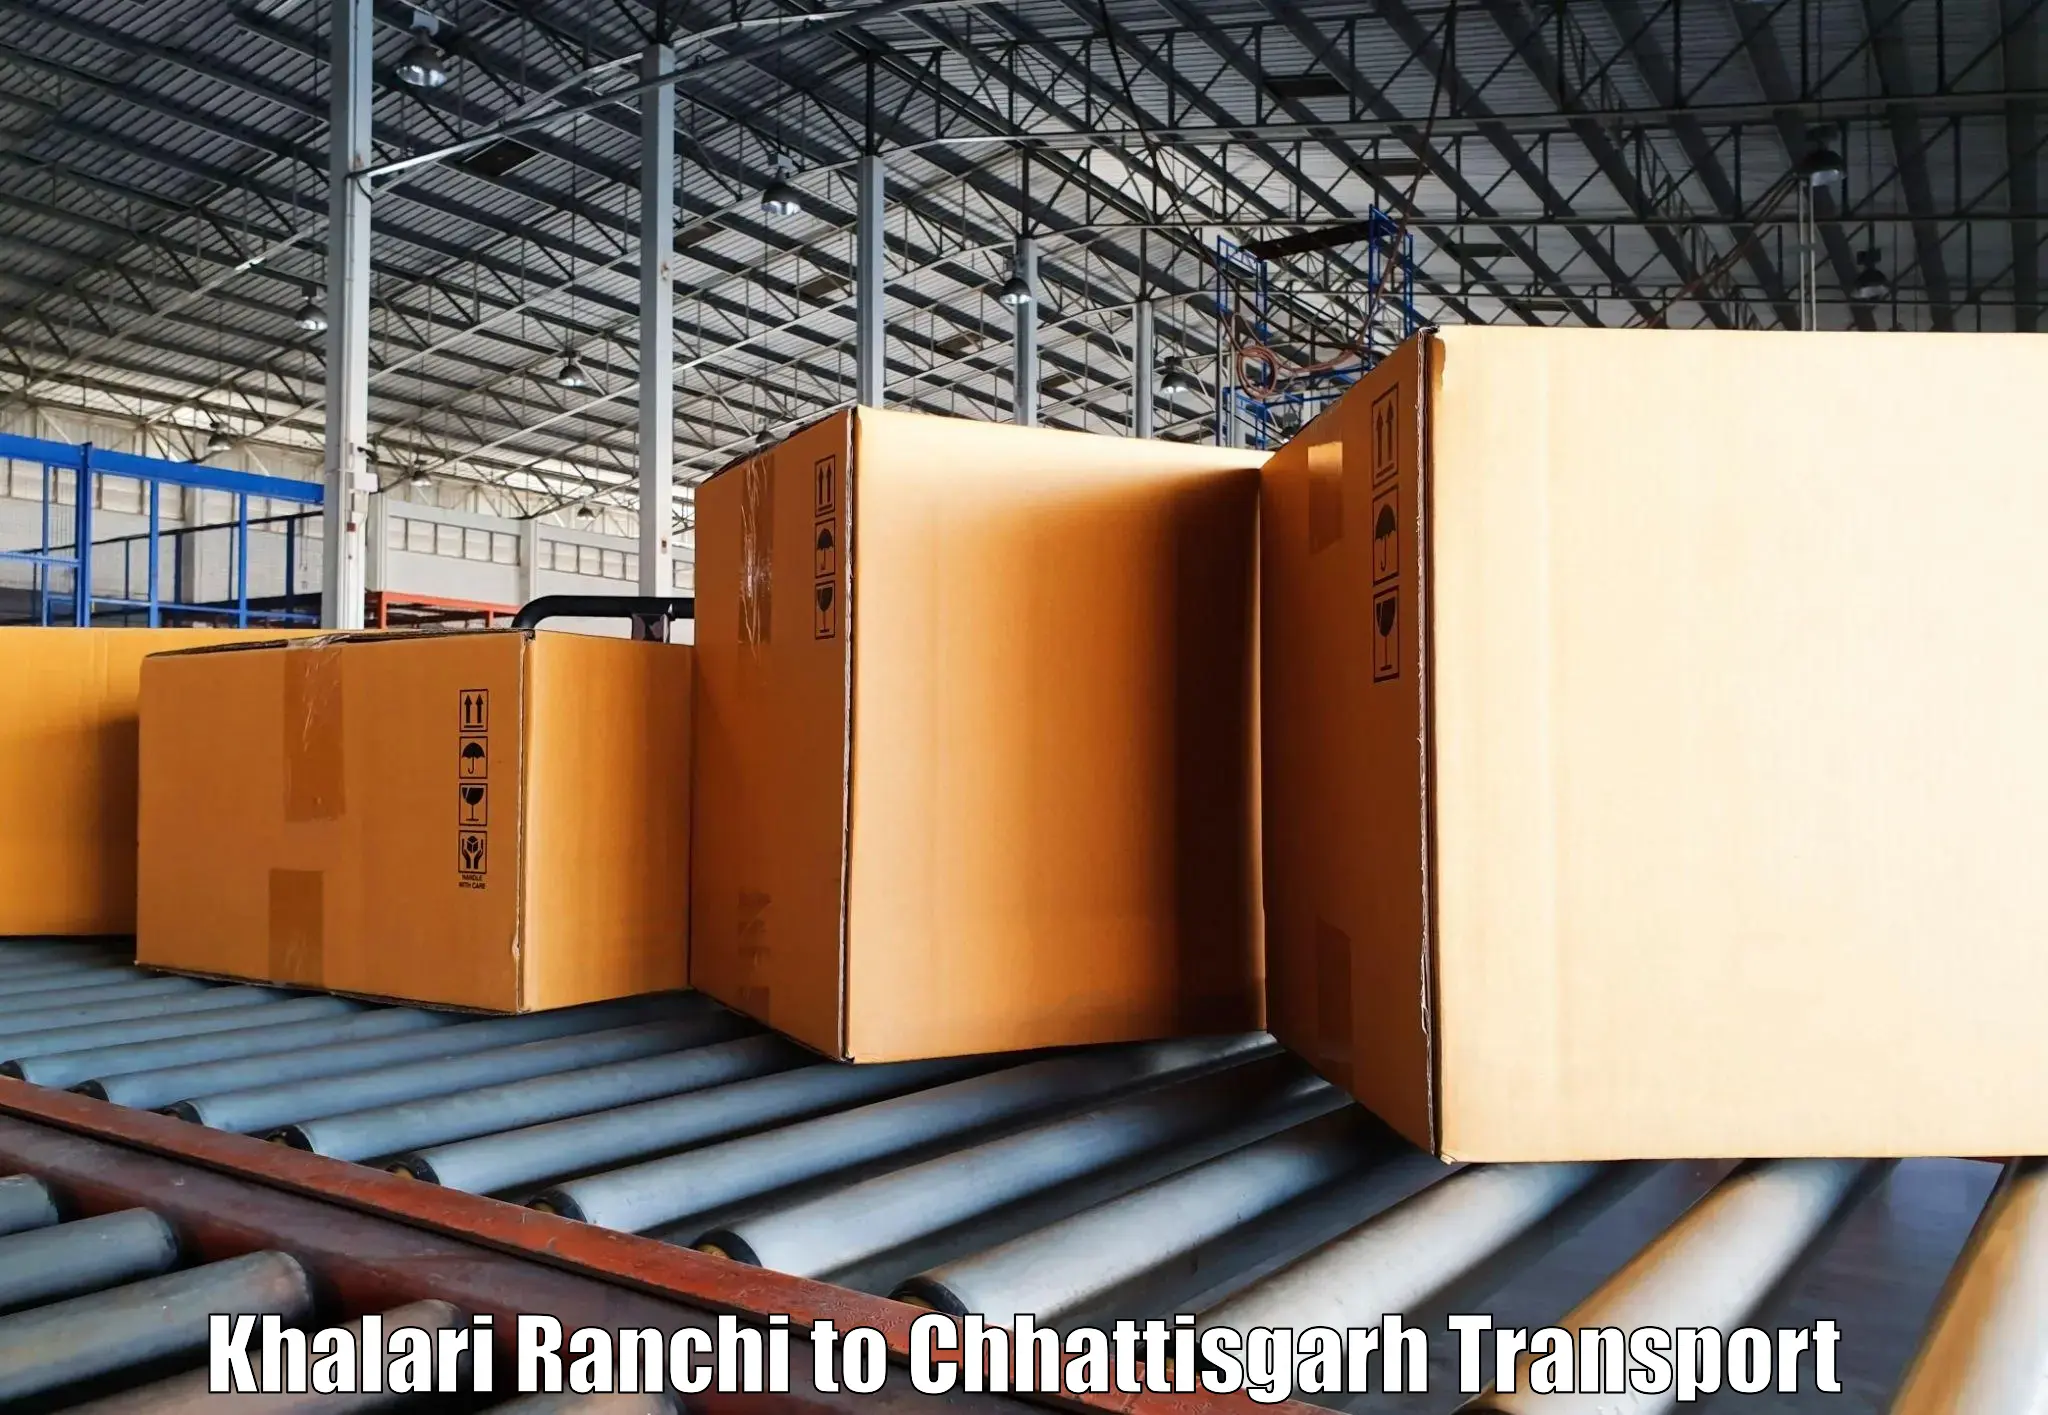 Online transport service Khalari Ranchi to Pithora